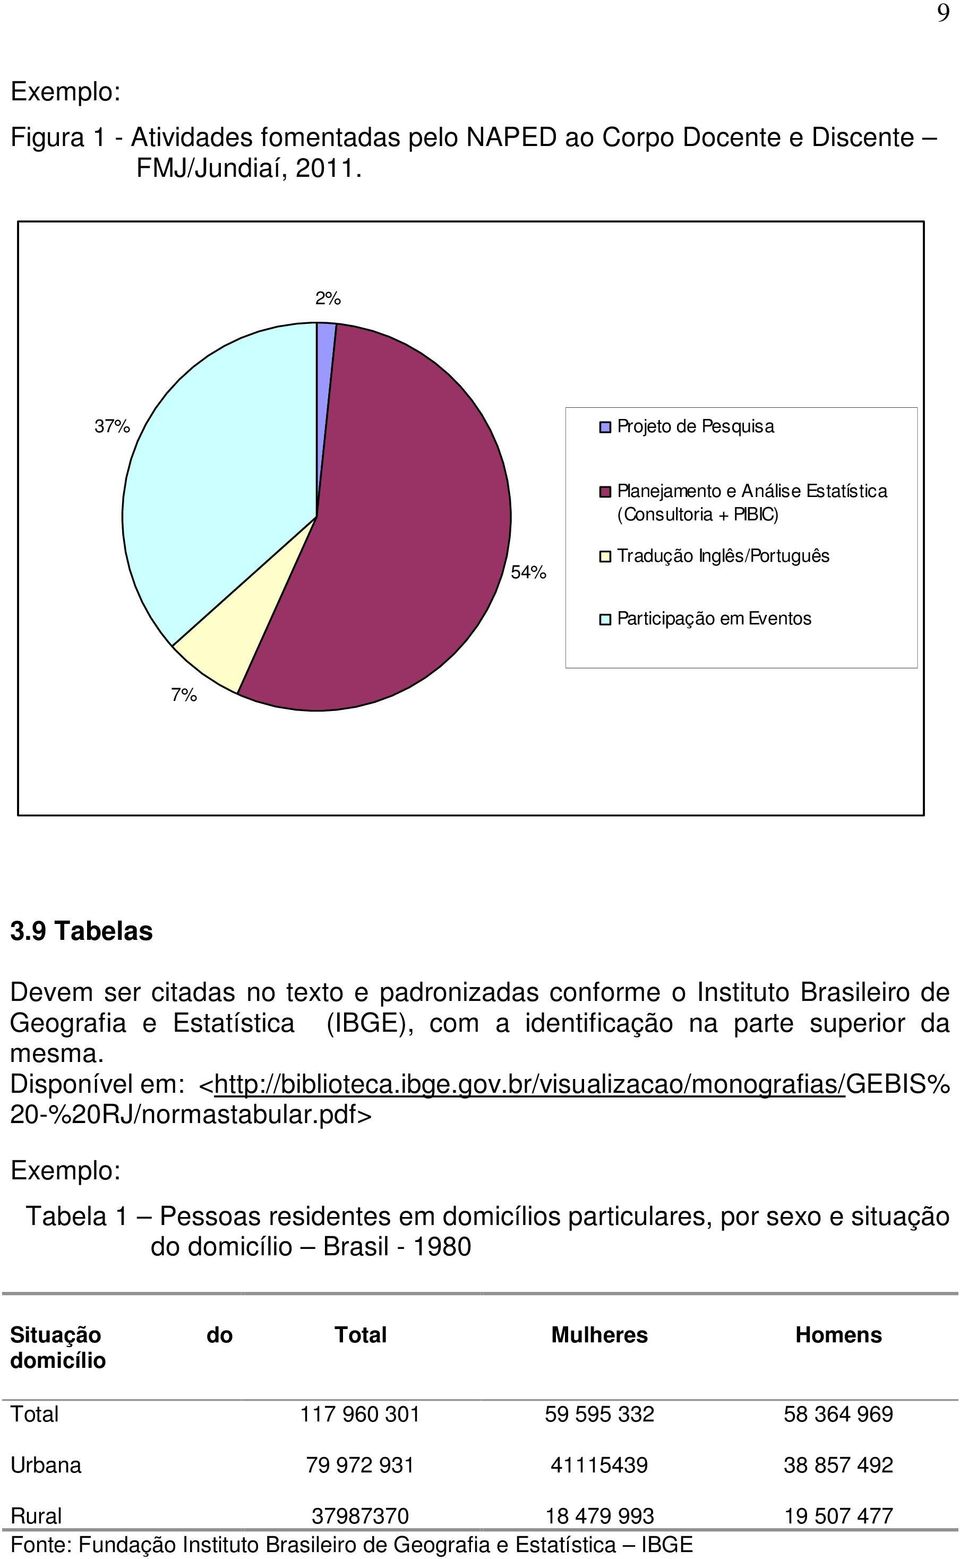 9 Tabelas Devem ser citadas no texto e padronizadas conforme o Instituto Brasileiro de Geografia e Estatística (IBGE), com a identificação na parte superior da mesma.